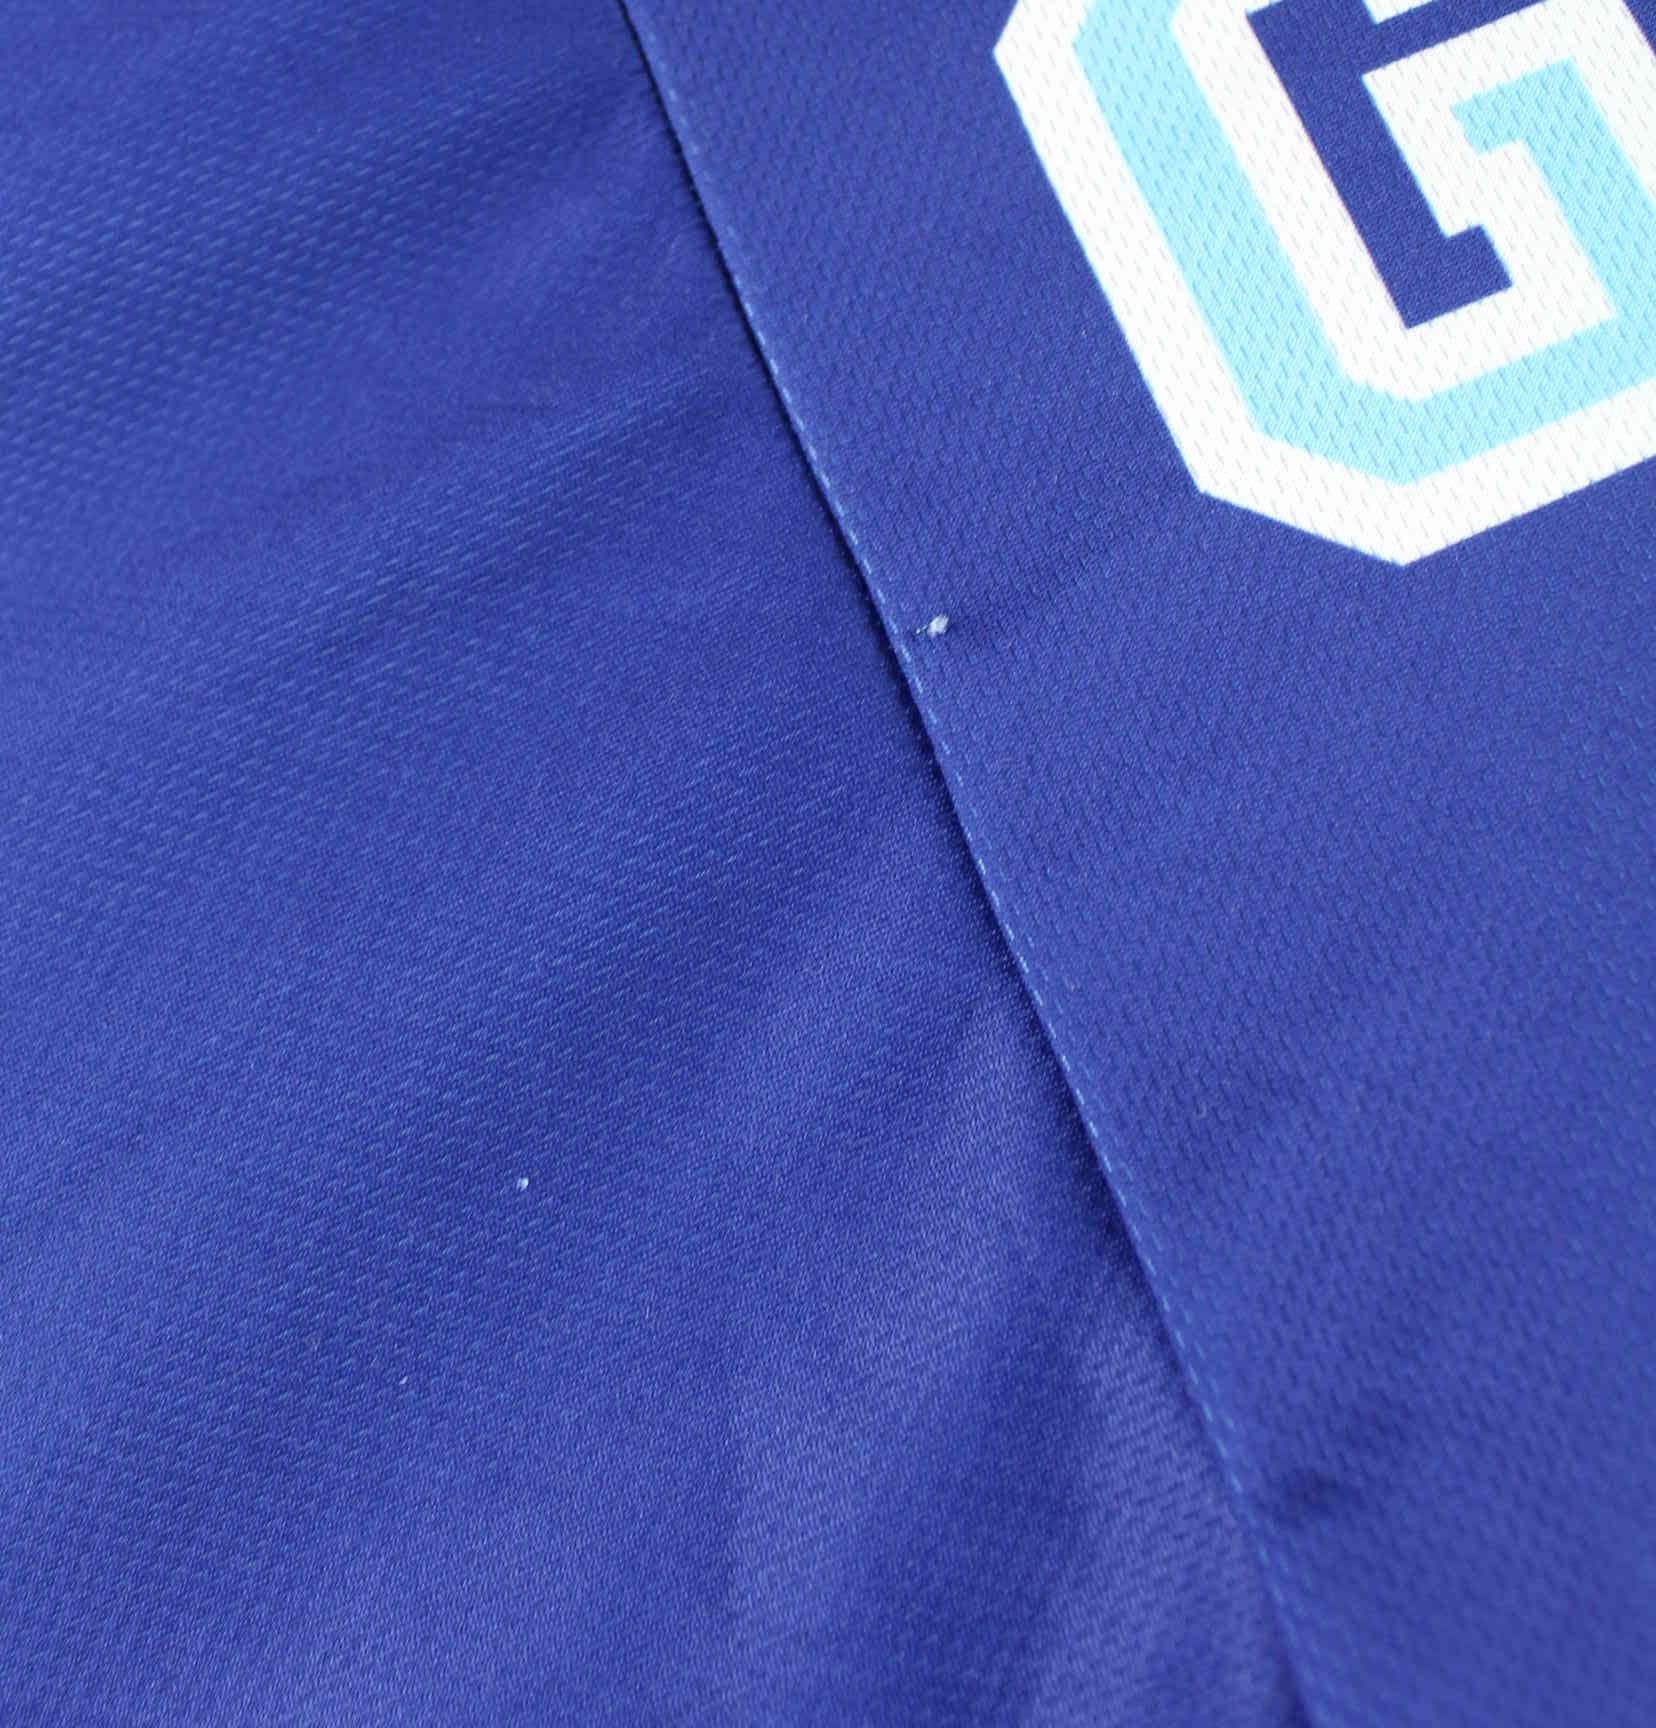 Vintage Balu Se Print Jersey Blau S (detail image 5)